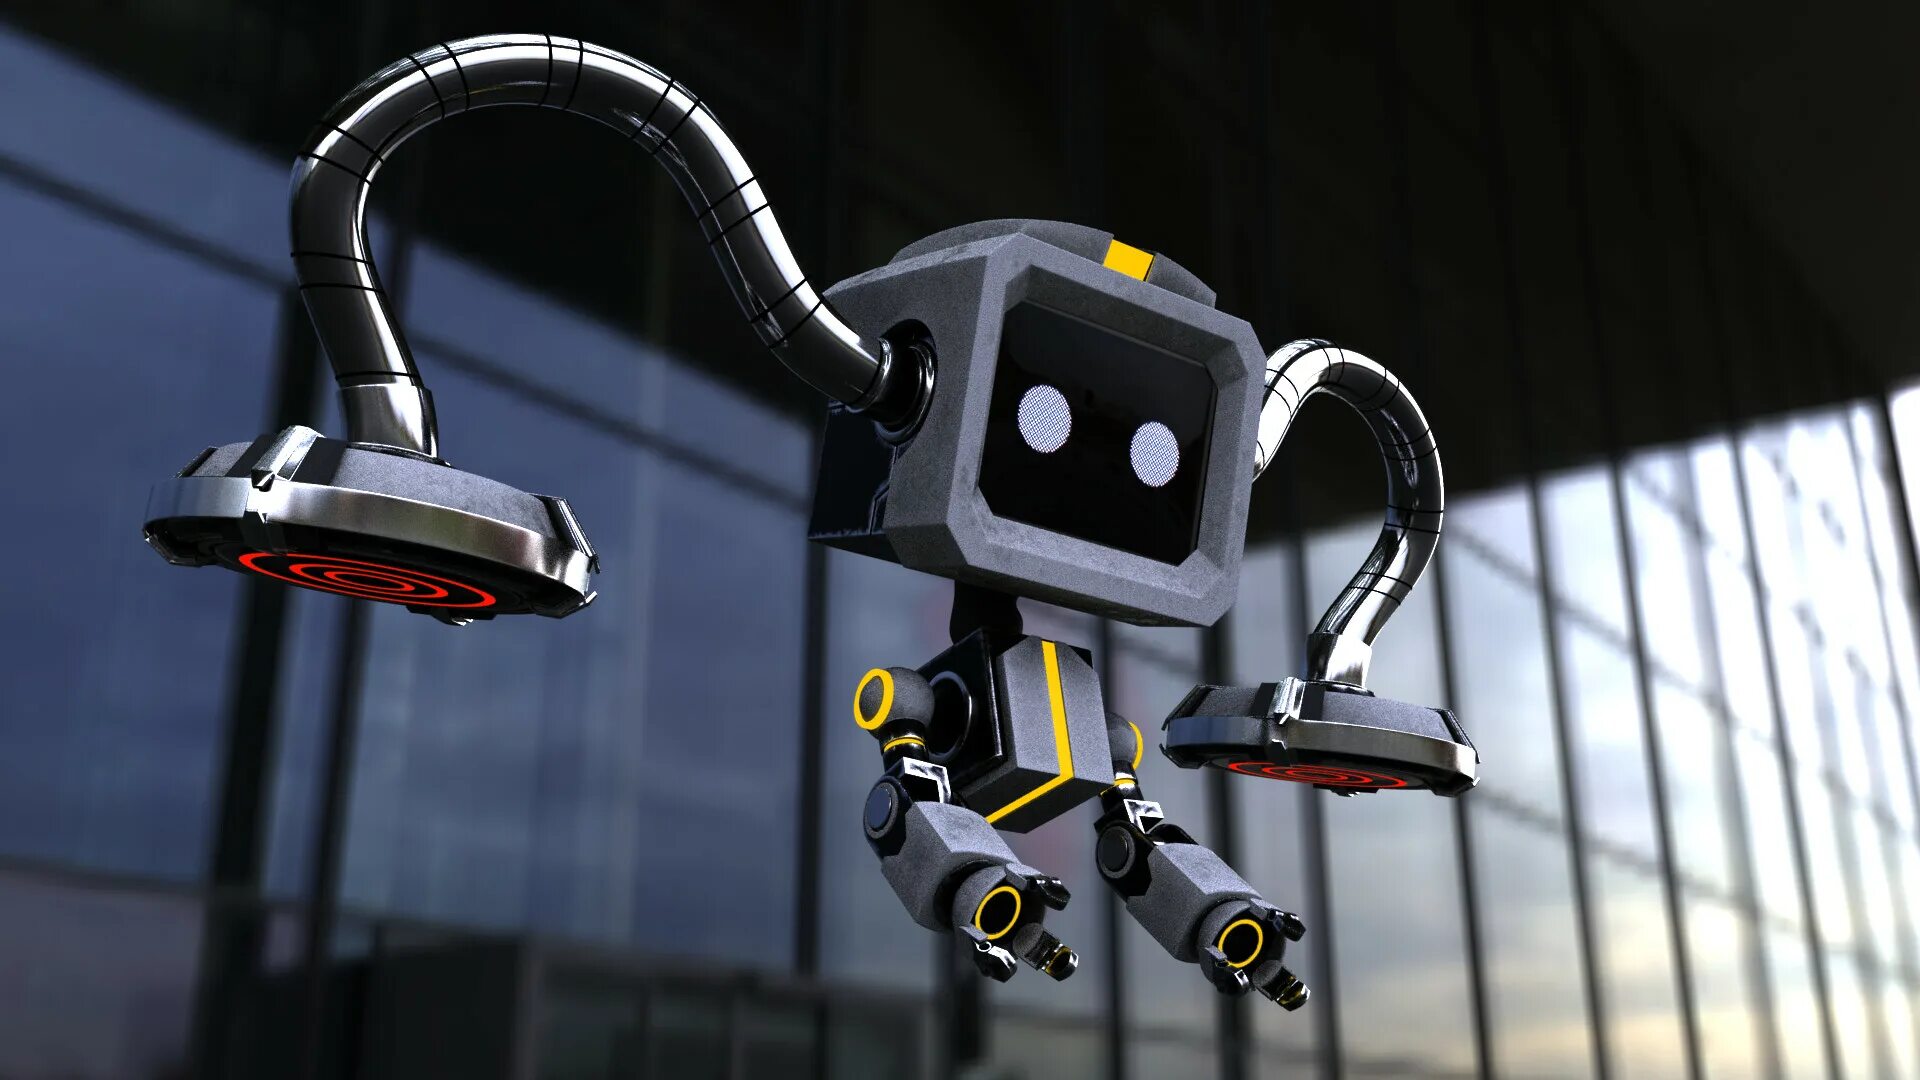 ROBOBEE робот. Робот на двух тросах. Робот в церкви. Flying robots